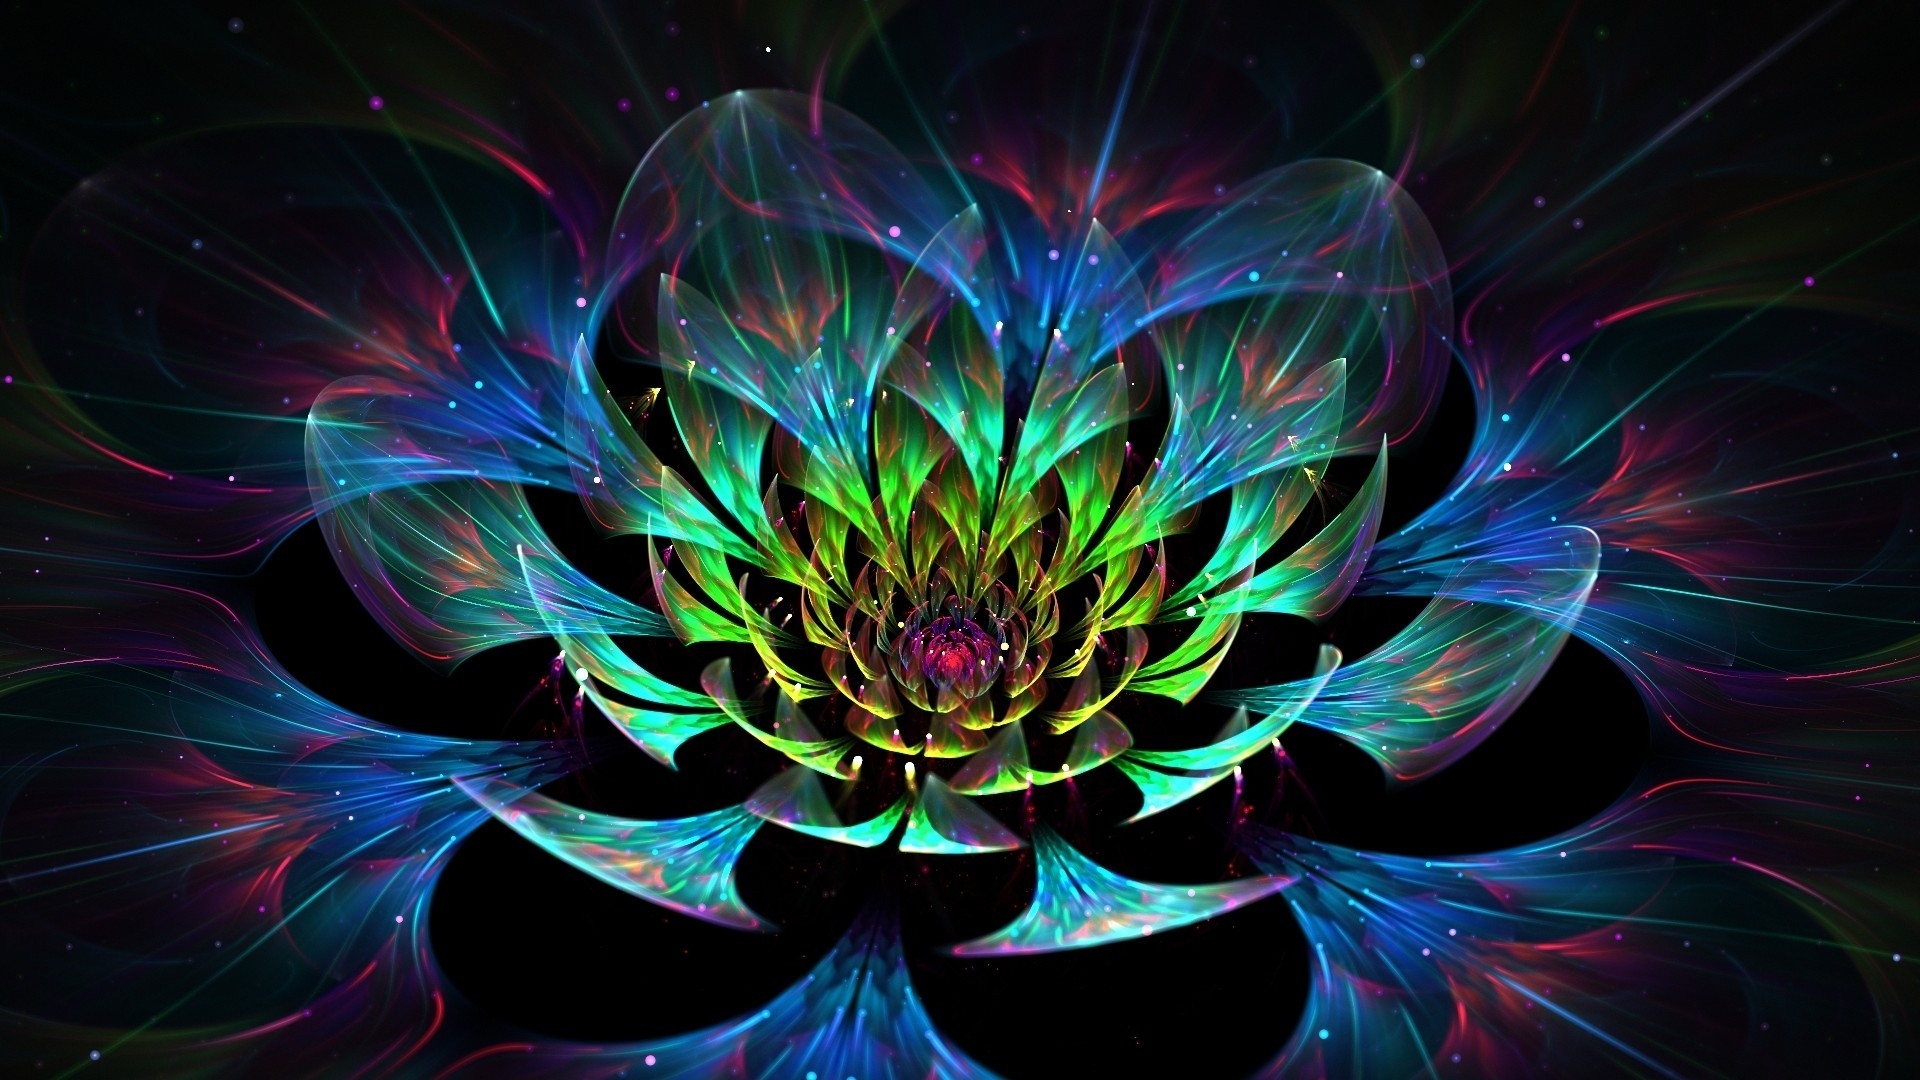 3D Lotus Flower for 1920 x 1080 HDTV 1080p resolution